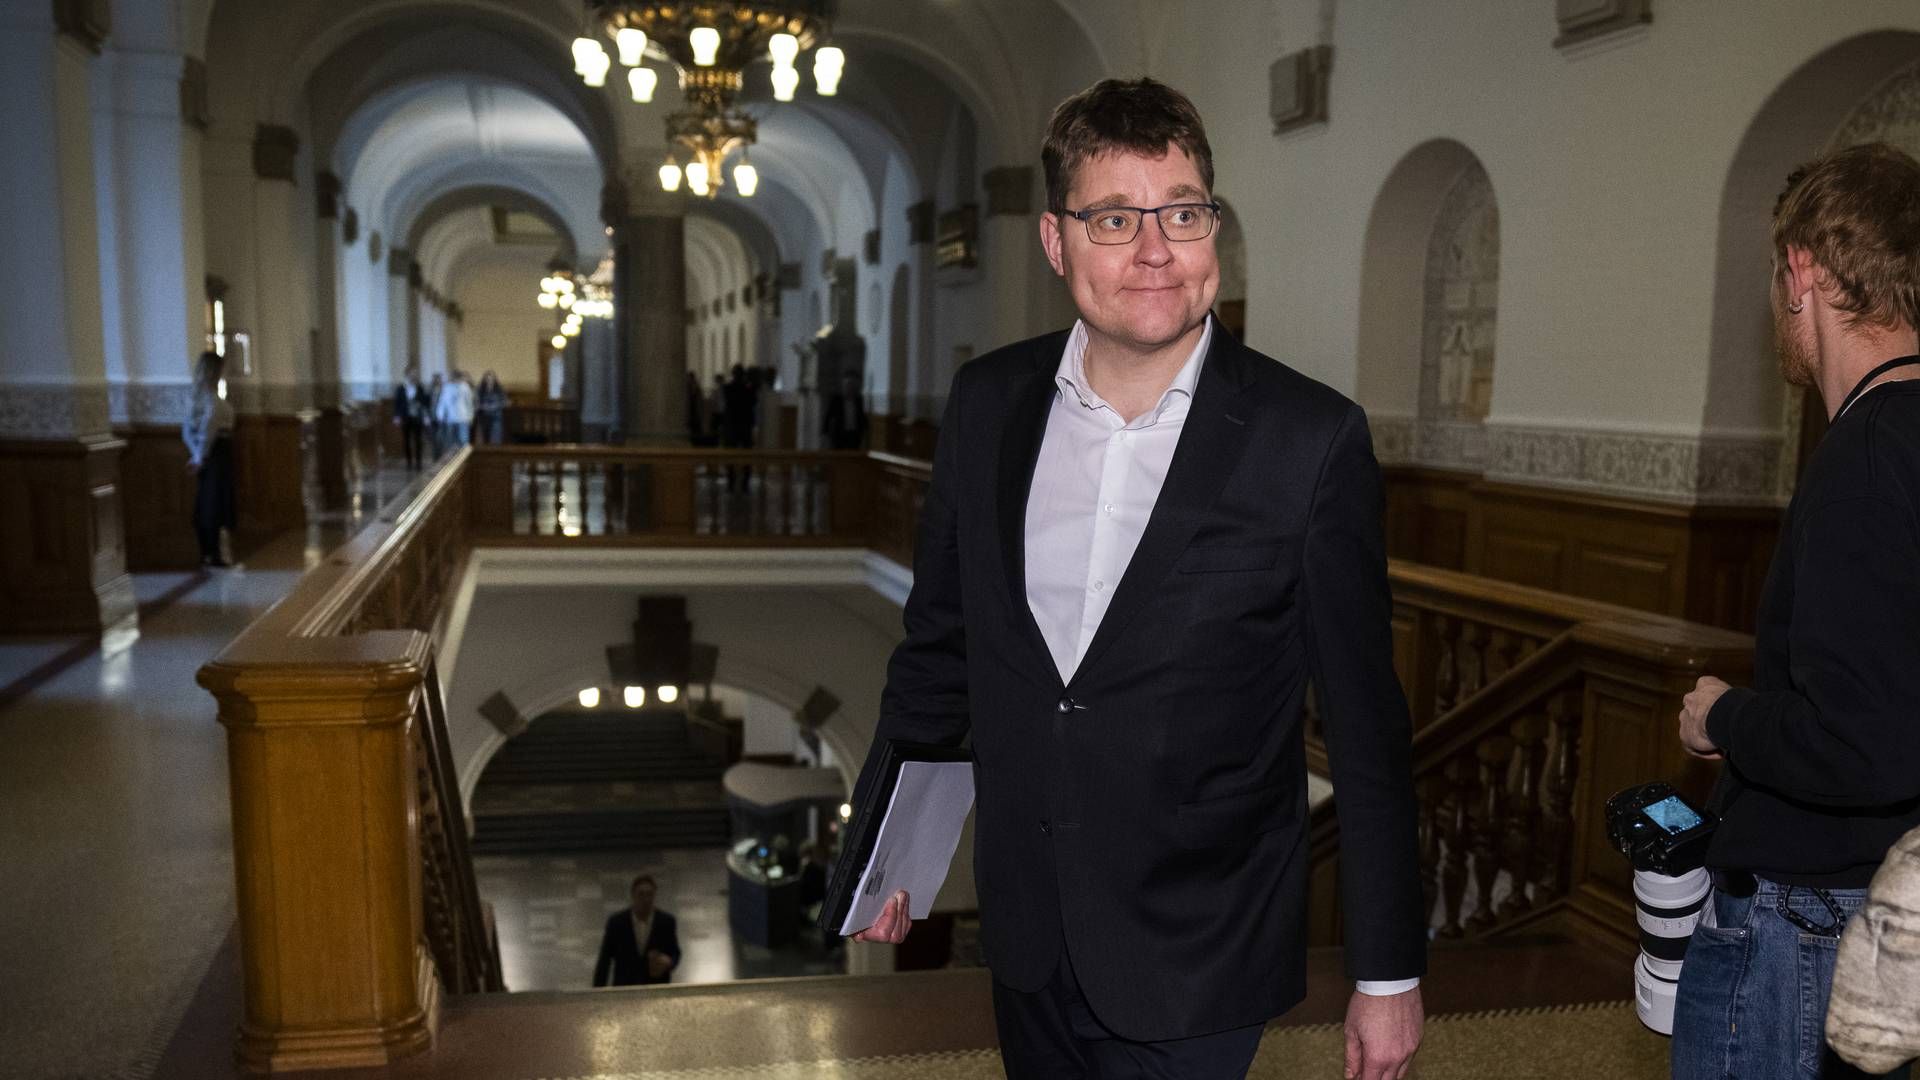 Transportordfører for Radikale Venstre, Rasmus Helveg Petersen. | Foto: Martin Sylvest